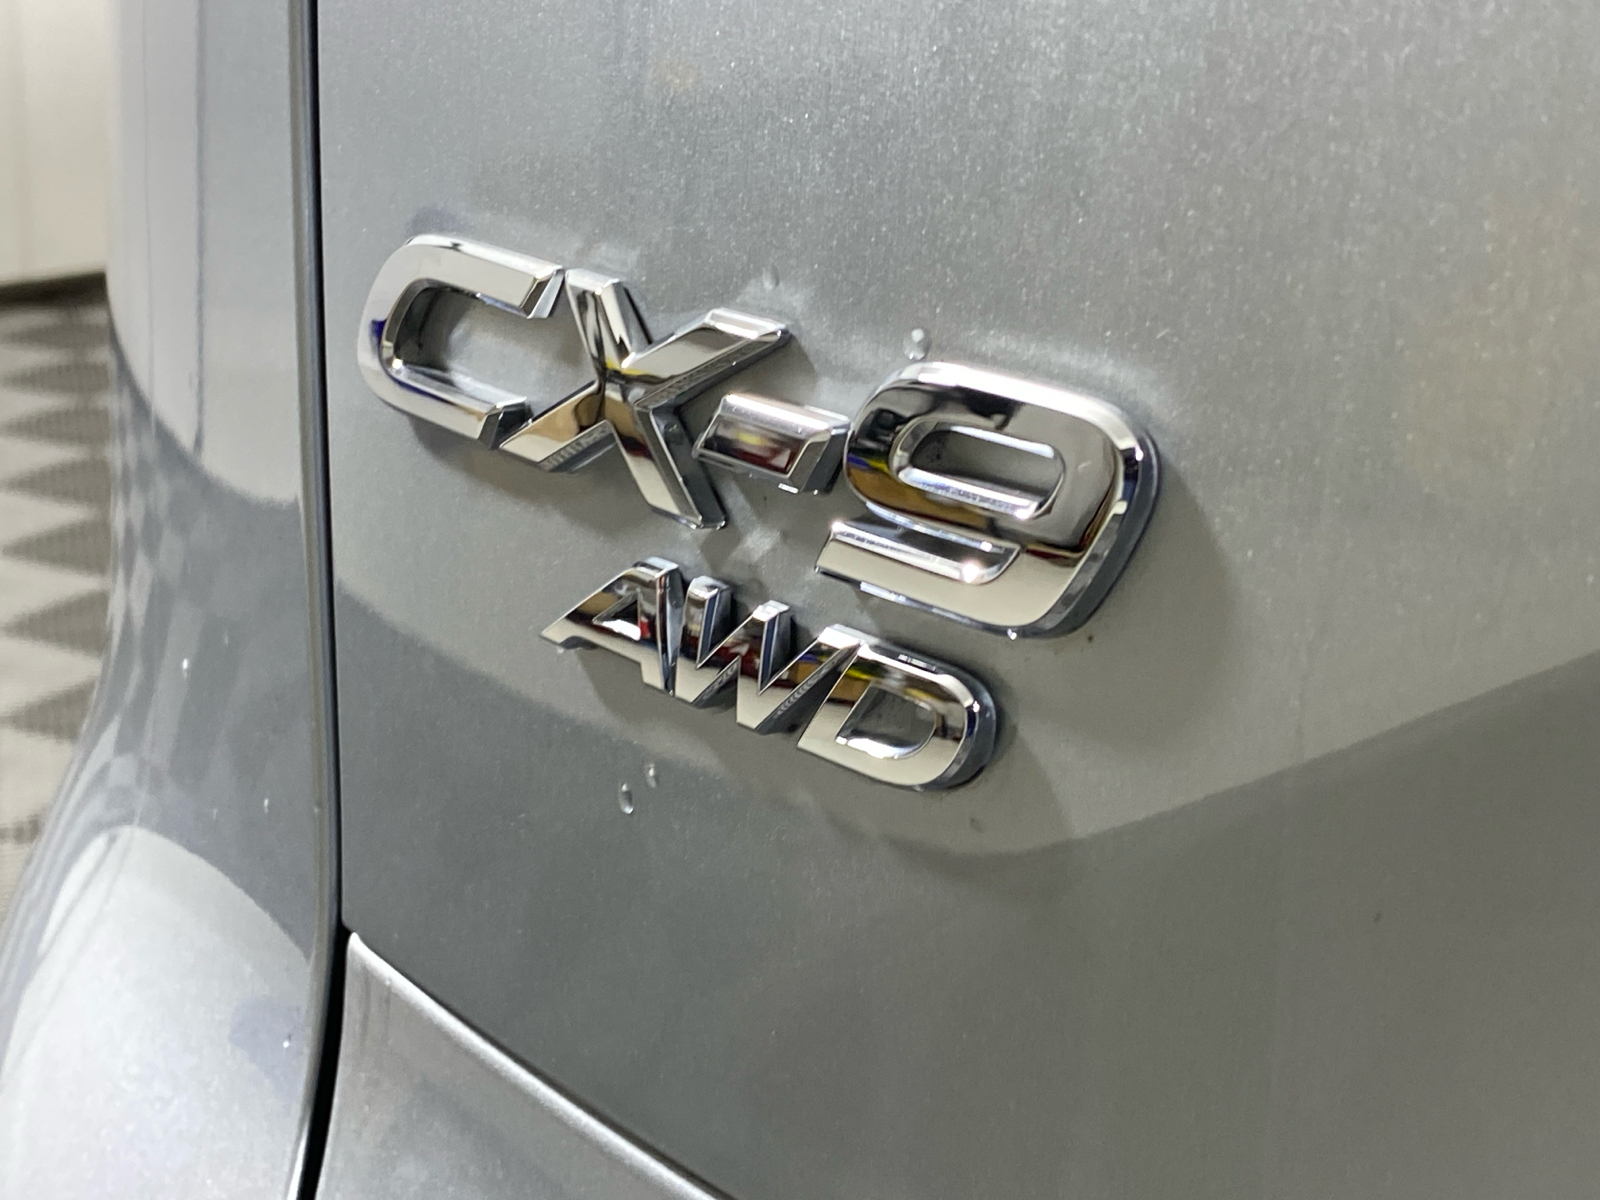 2019 Mazda CX-9 Touring 10